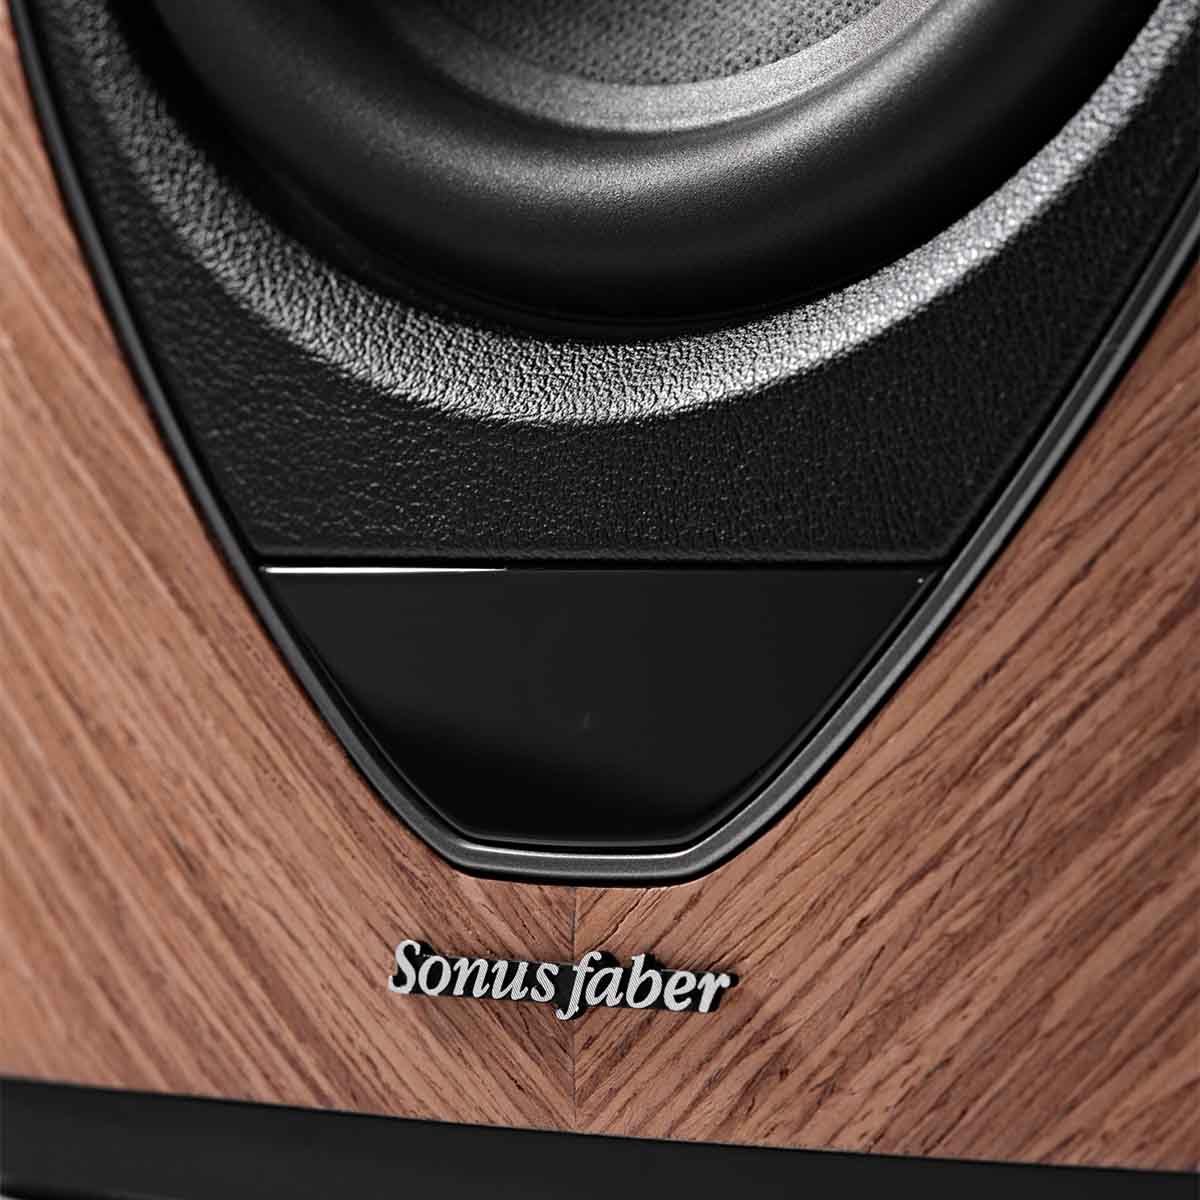 Sonus Faber Duetto Wireless Speaker System close-up of Sonus Faber logo